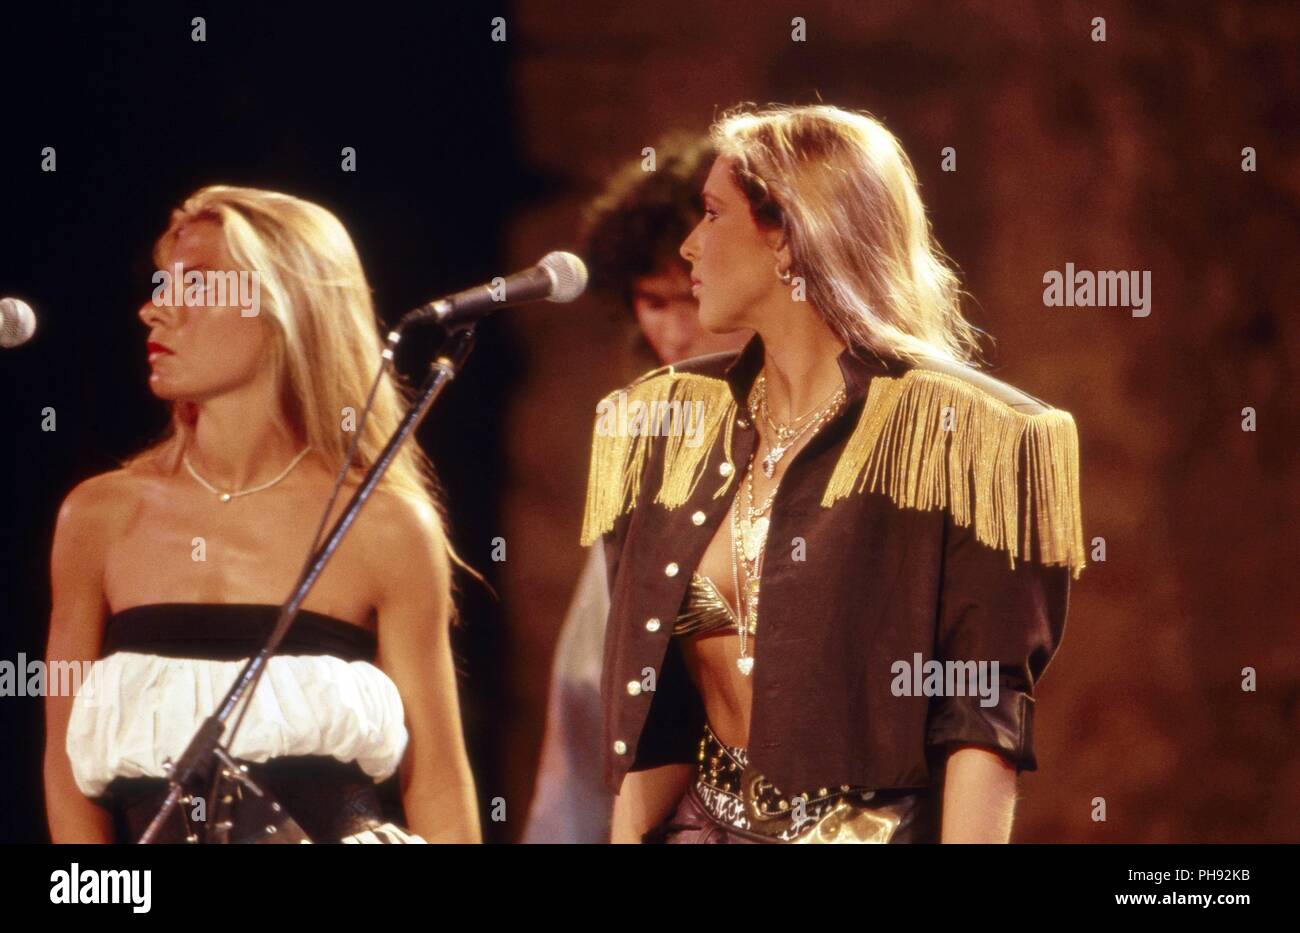 Bakrgoundsängerinnen von Thomas Anders, Sänger der Band 'Modern Talking', kurz vor deren Auflösung, bei einem Auftritt in Cesme, Türkei 1987. Backgrou Stock Photo